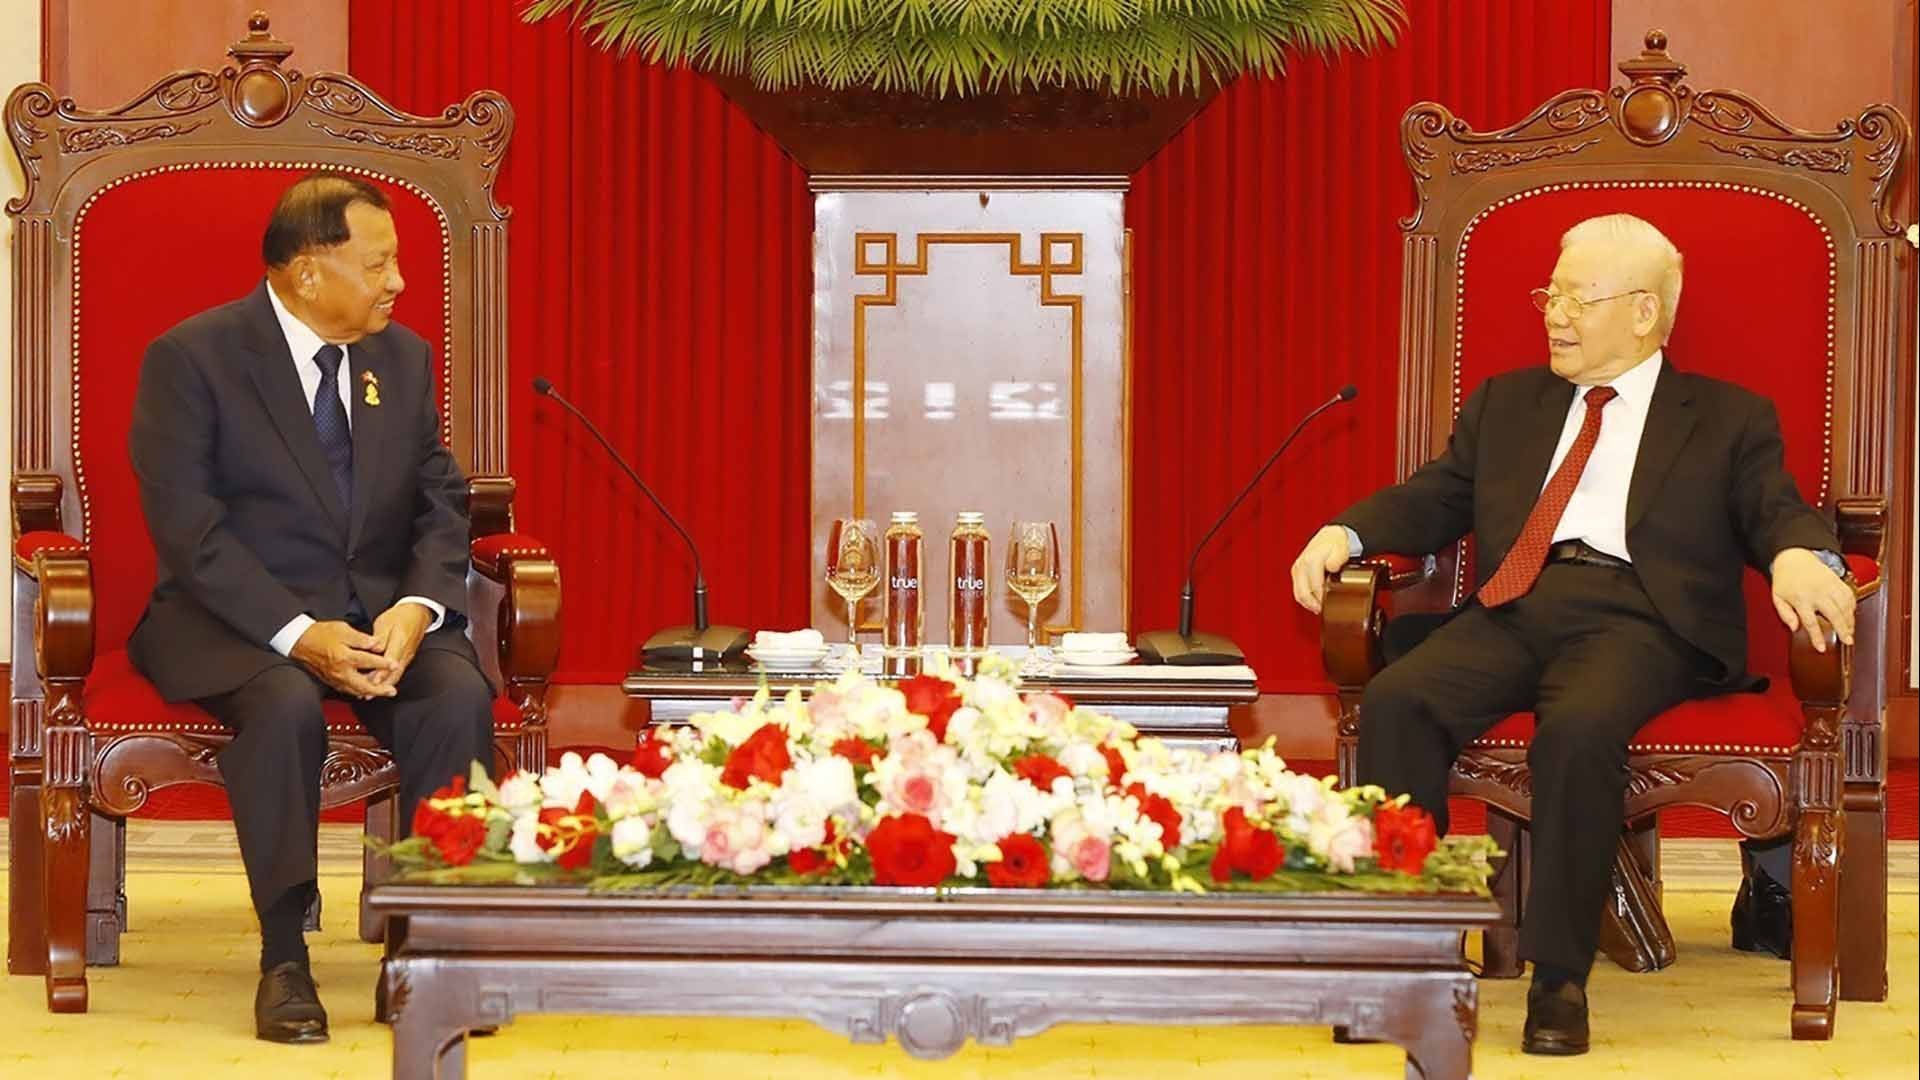 Tổng Bí thư Nguyễn Phú Trọng tiếp Chủ tịch Thượng viện Vương quốc Campuchia